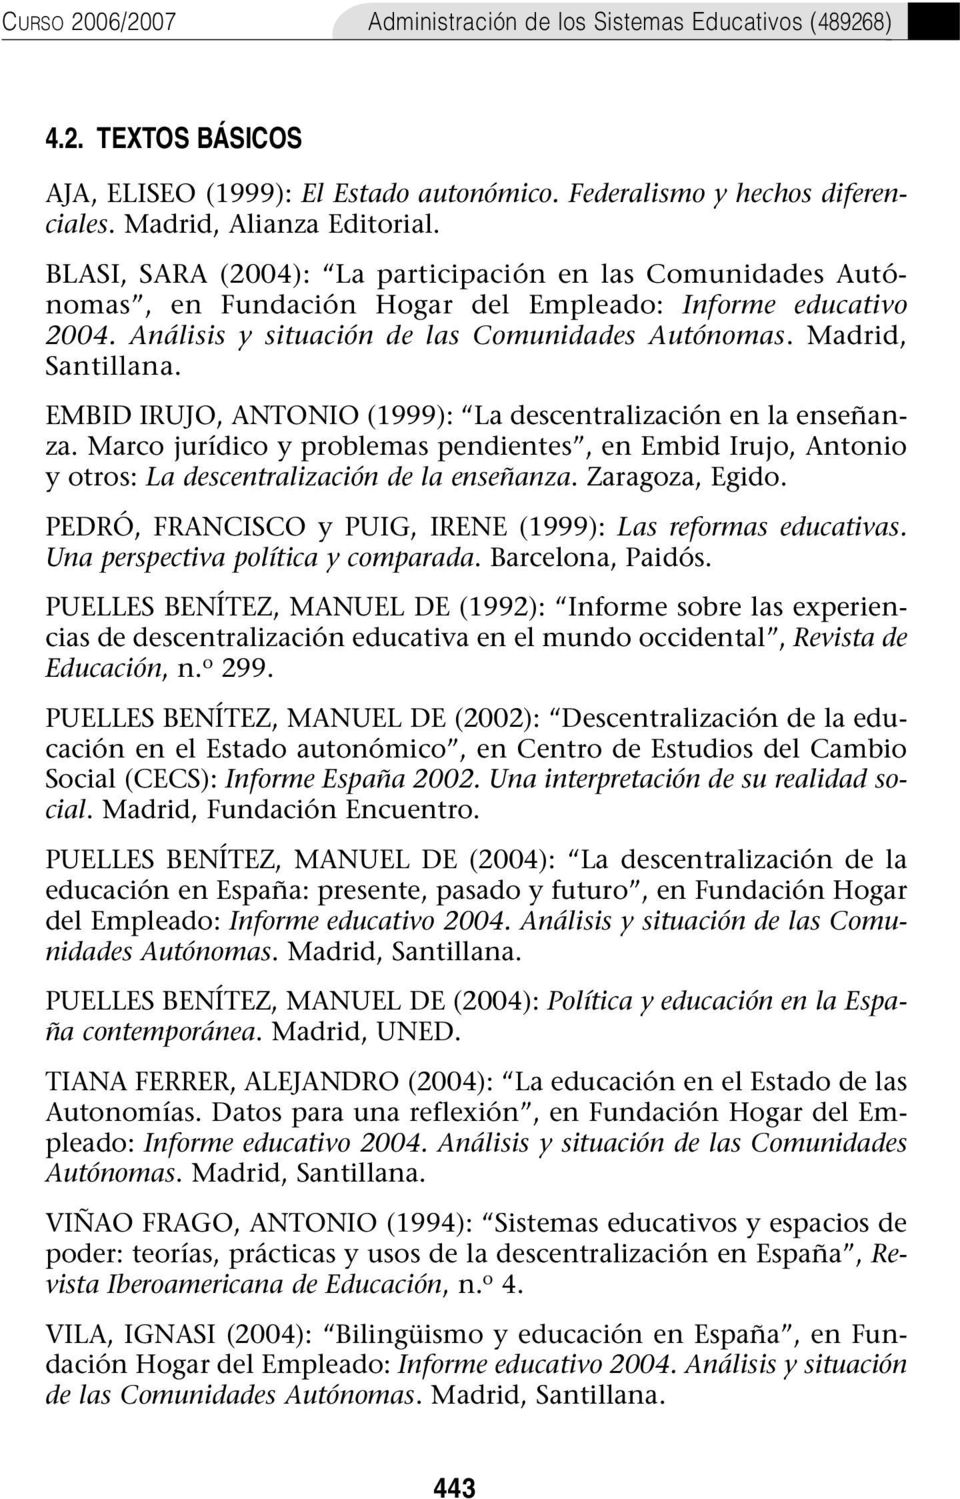 EMBID IRUJO, ANTONIO (1999): La descentralización en la enseñanza. Marco jurídico y problemas pendientes, en Embid Irujo, Antonio y otros: La descentralización de la enseñanza. Zaragoza, Egido.